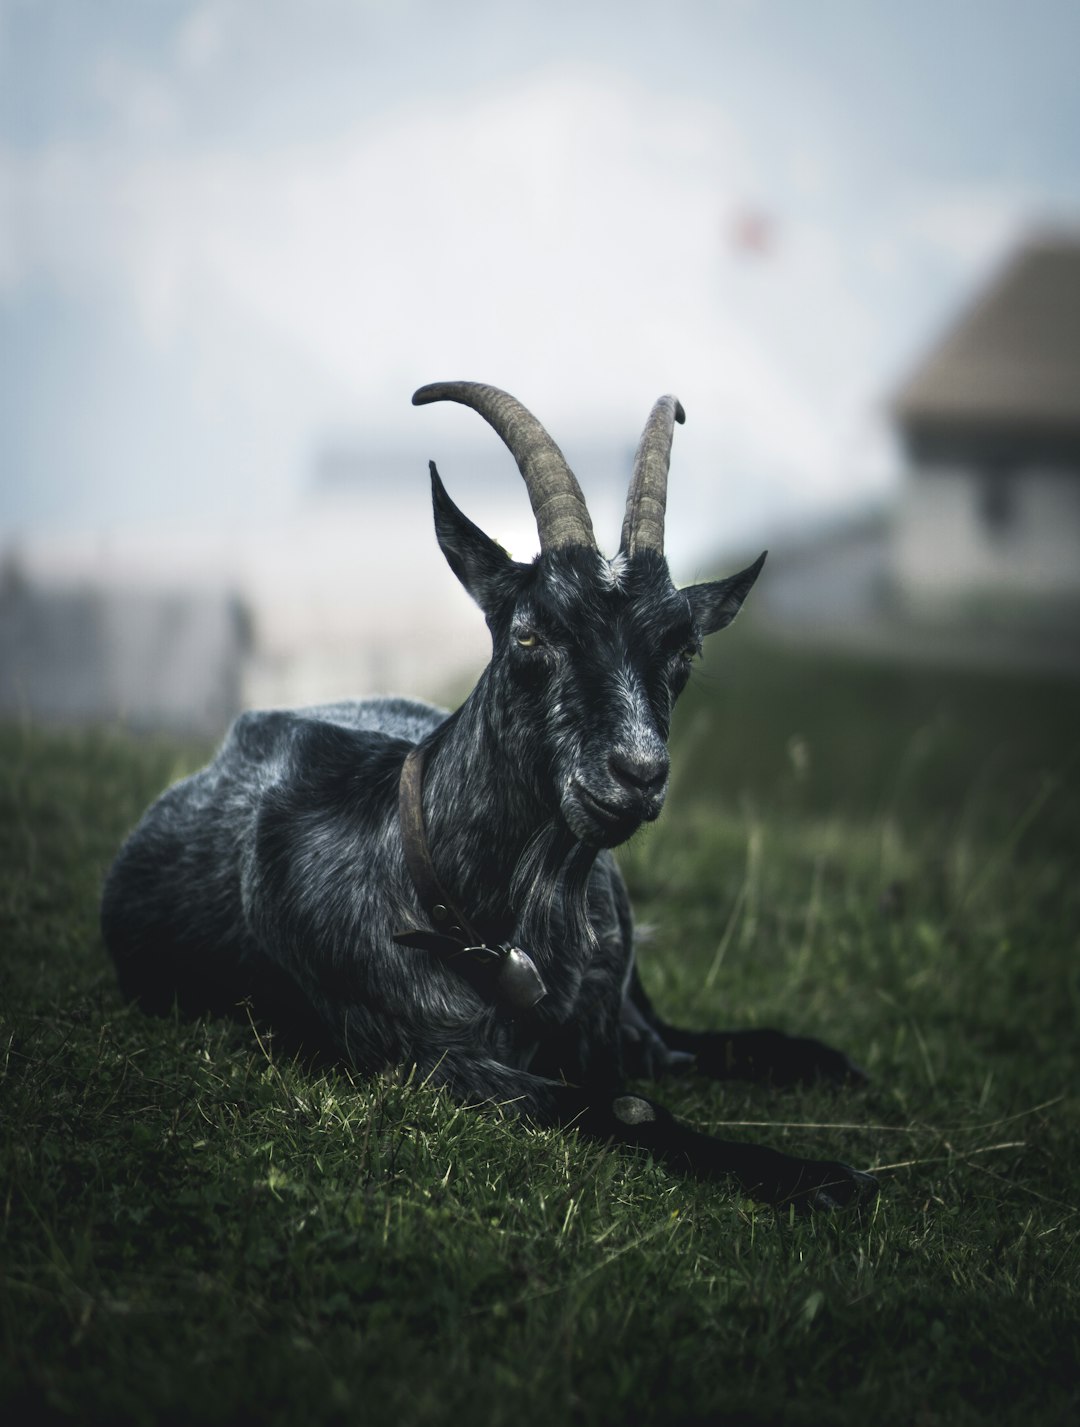 Goat in focus